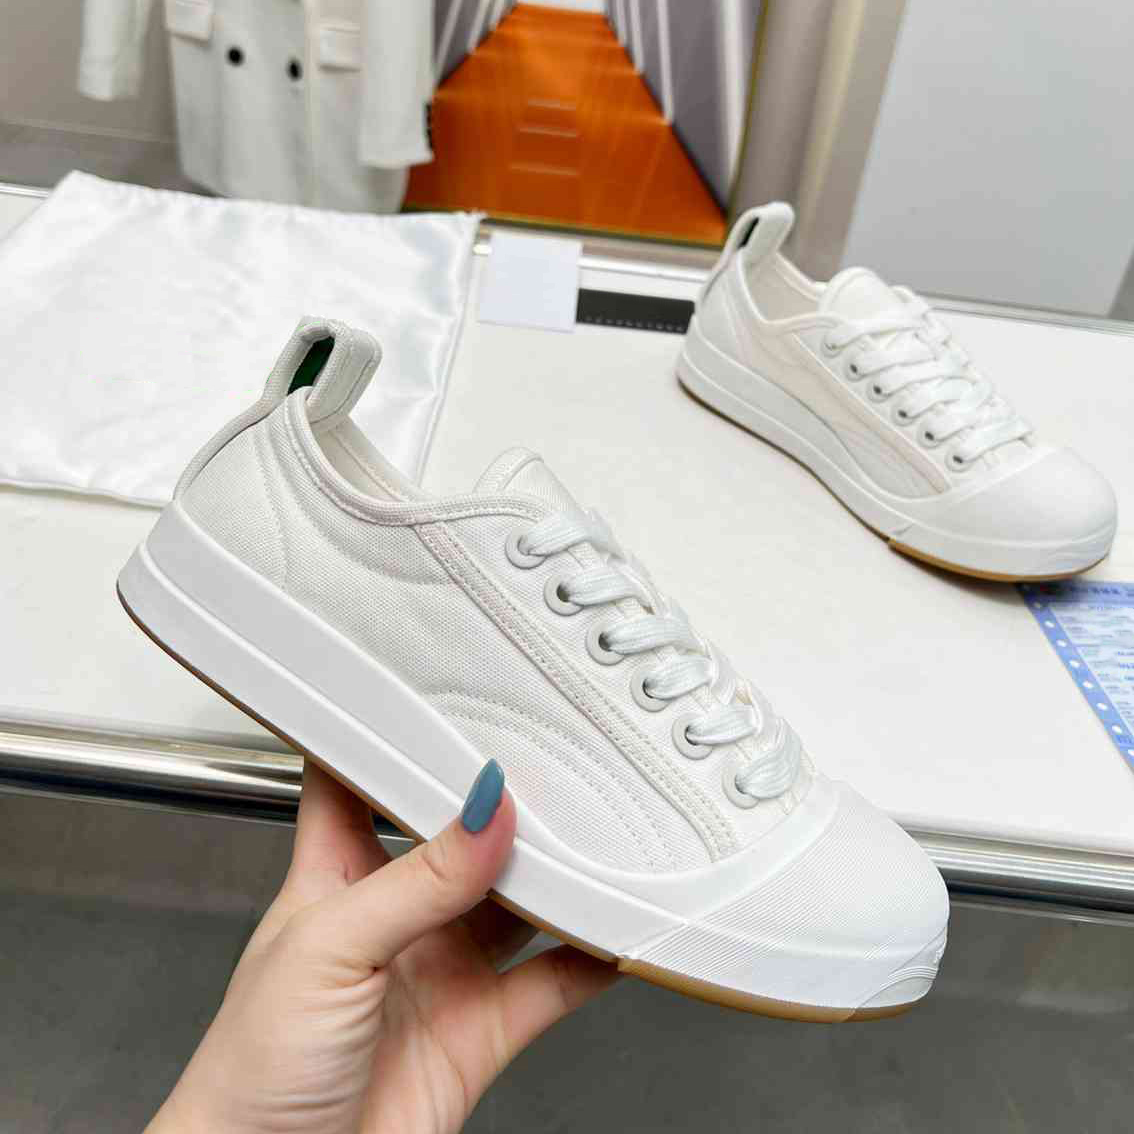 Novo designer de verão Vulcan tênis masculino e feminino sola de borracha casual sapatos rasos Sapato de skate confortável sapatos casuais Periquito branco óptico tamanho 35-45 com caixa